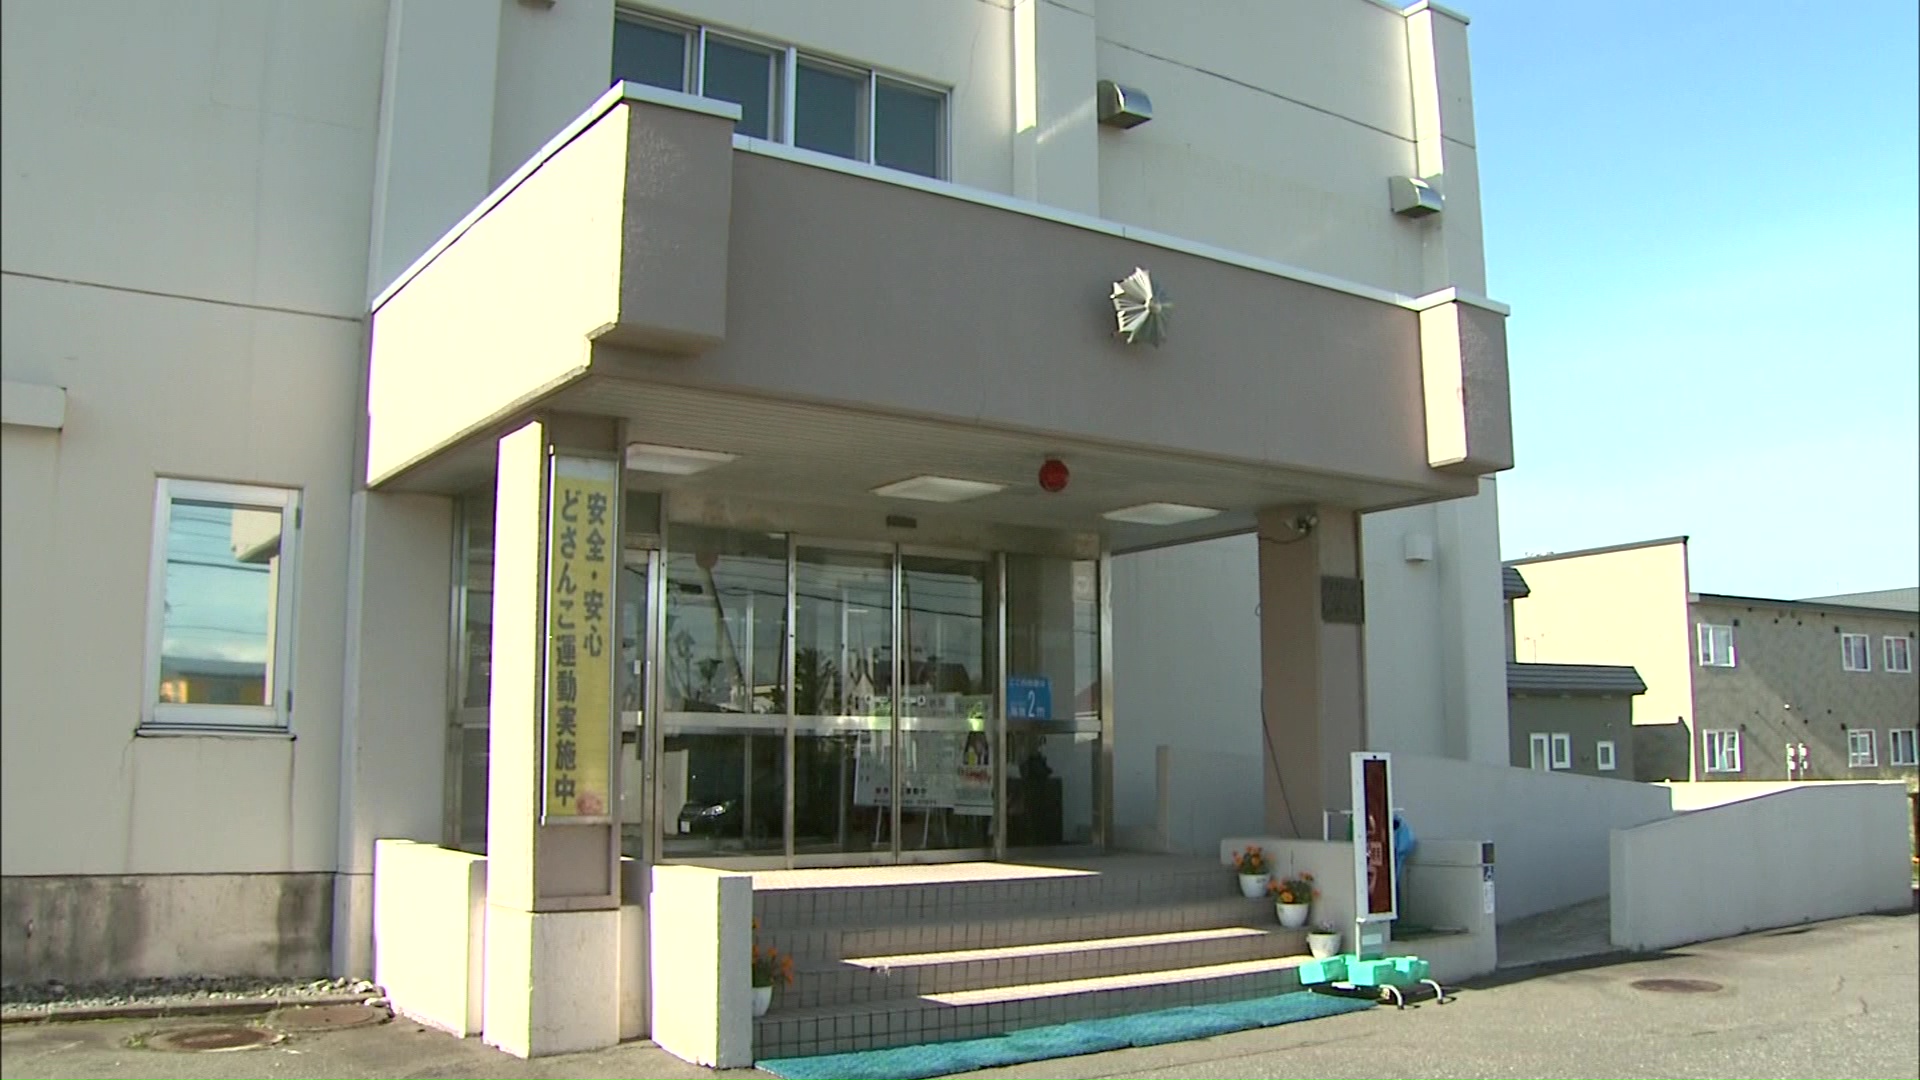 傷害の疑いで男を逮捕した北海道警静内署